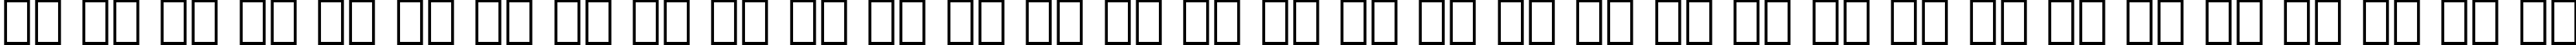 Пример написания русского алфавита шрифтом Sonic Extra Bold BT